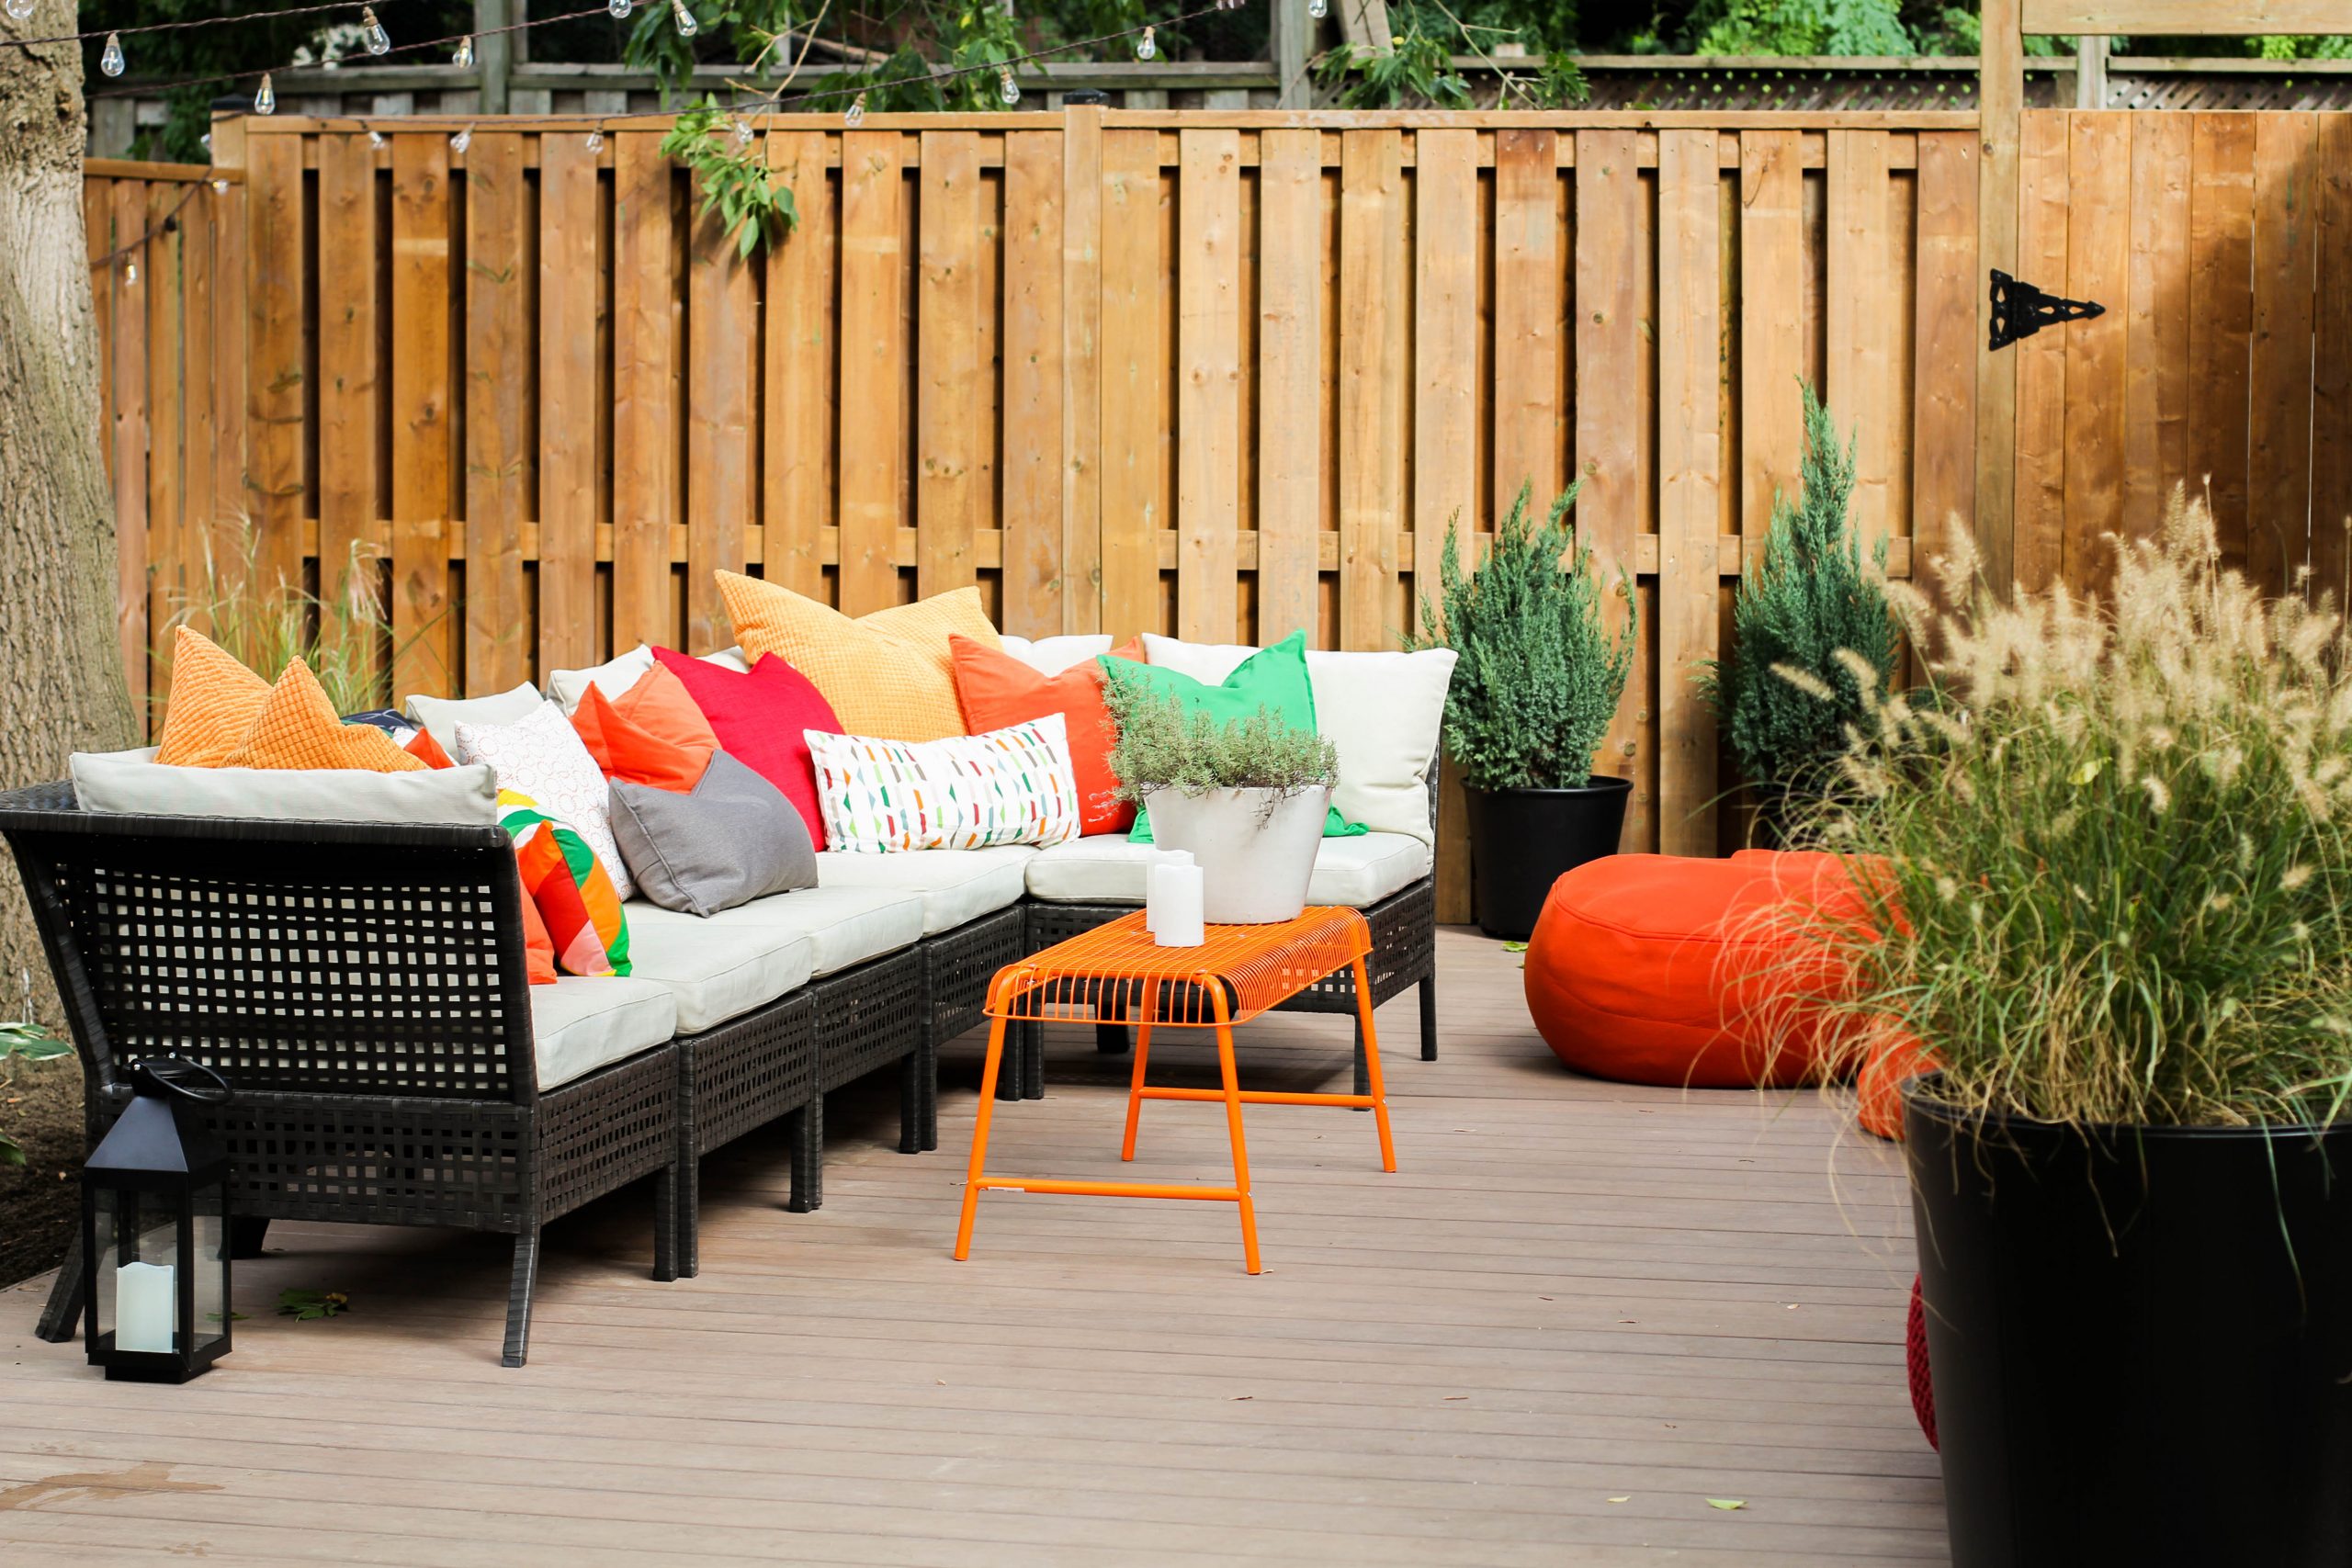 Bright and beautiful backyard space.